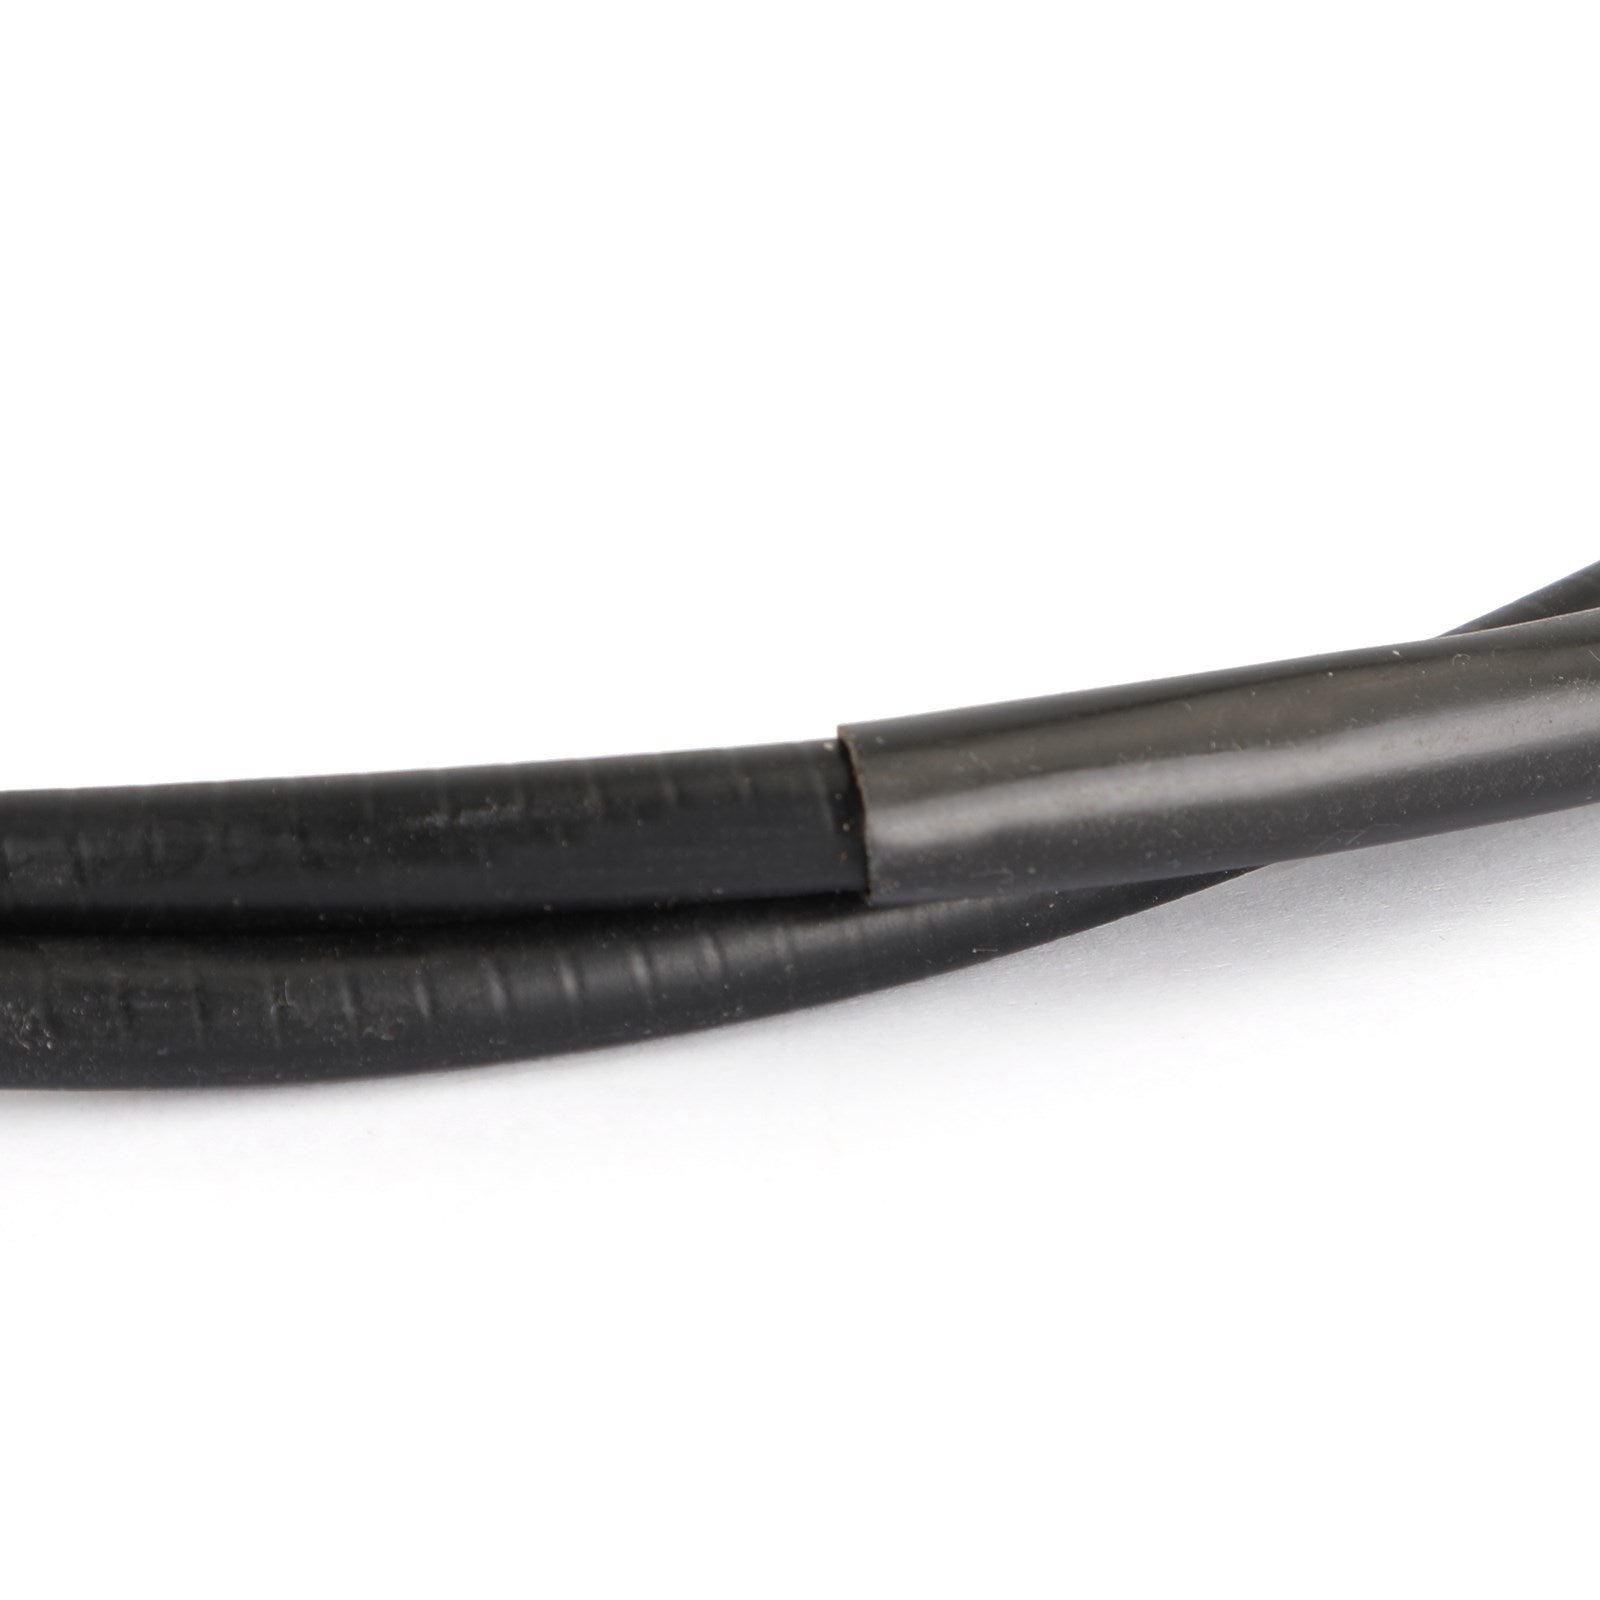 Cable de embrague de repuesto para Honda NV400 Shadow 400 98-08 VT750 97-09 genérico